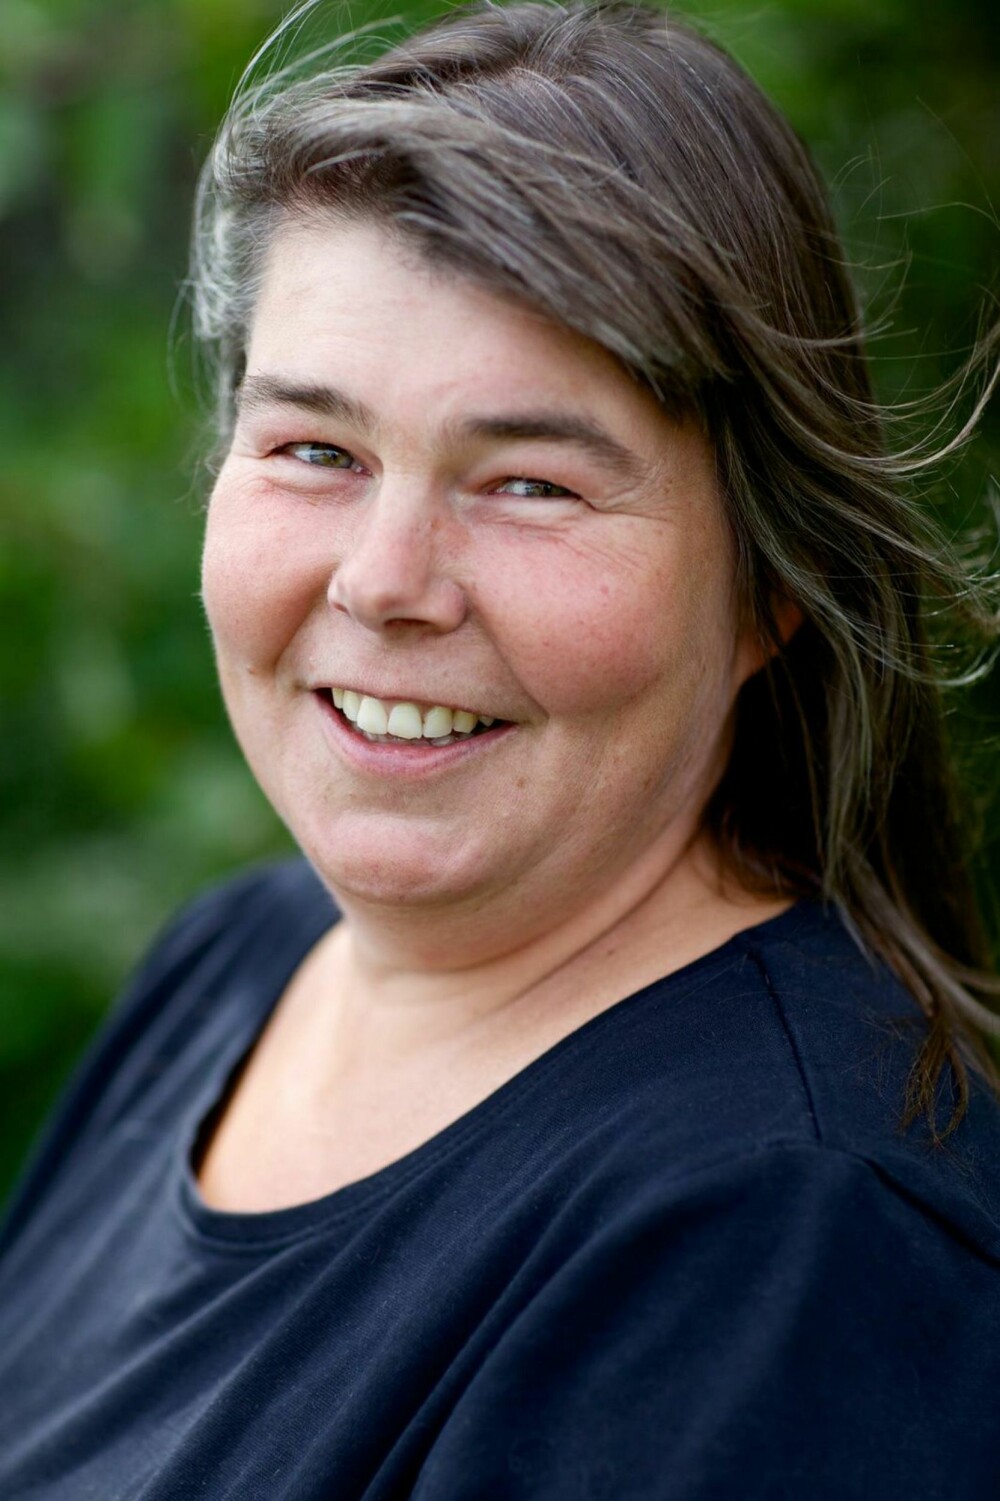 Anne Beate Ryen Teien: 45 år, fra Nesoden, bosatt Numedal. Agrotekniker, driver gård. Gift, to barn på 21 og 23 år.